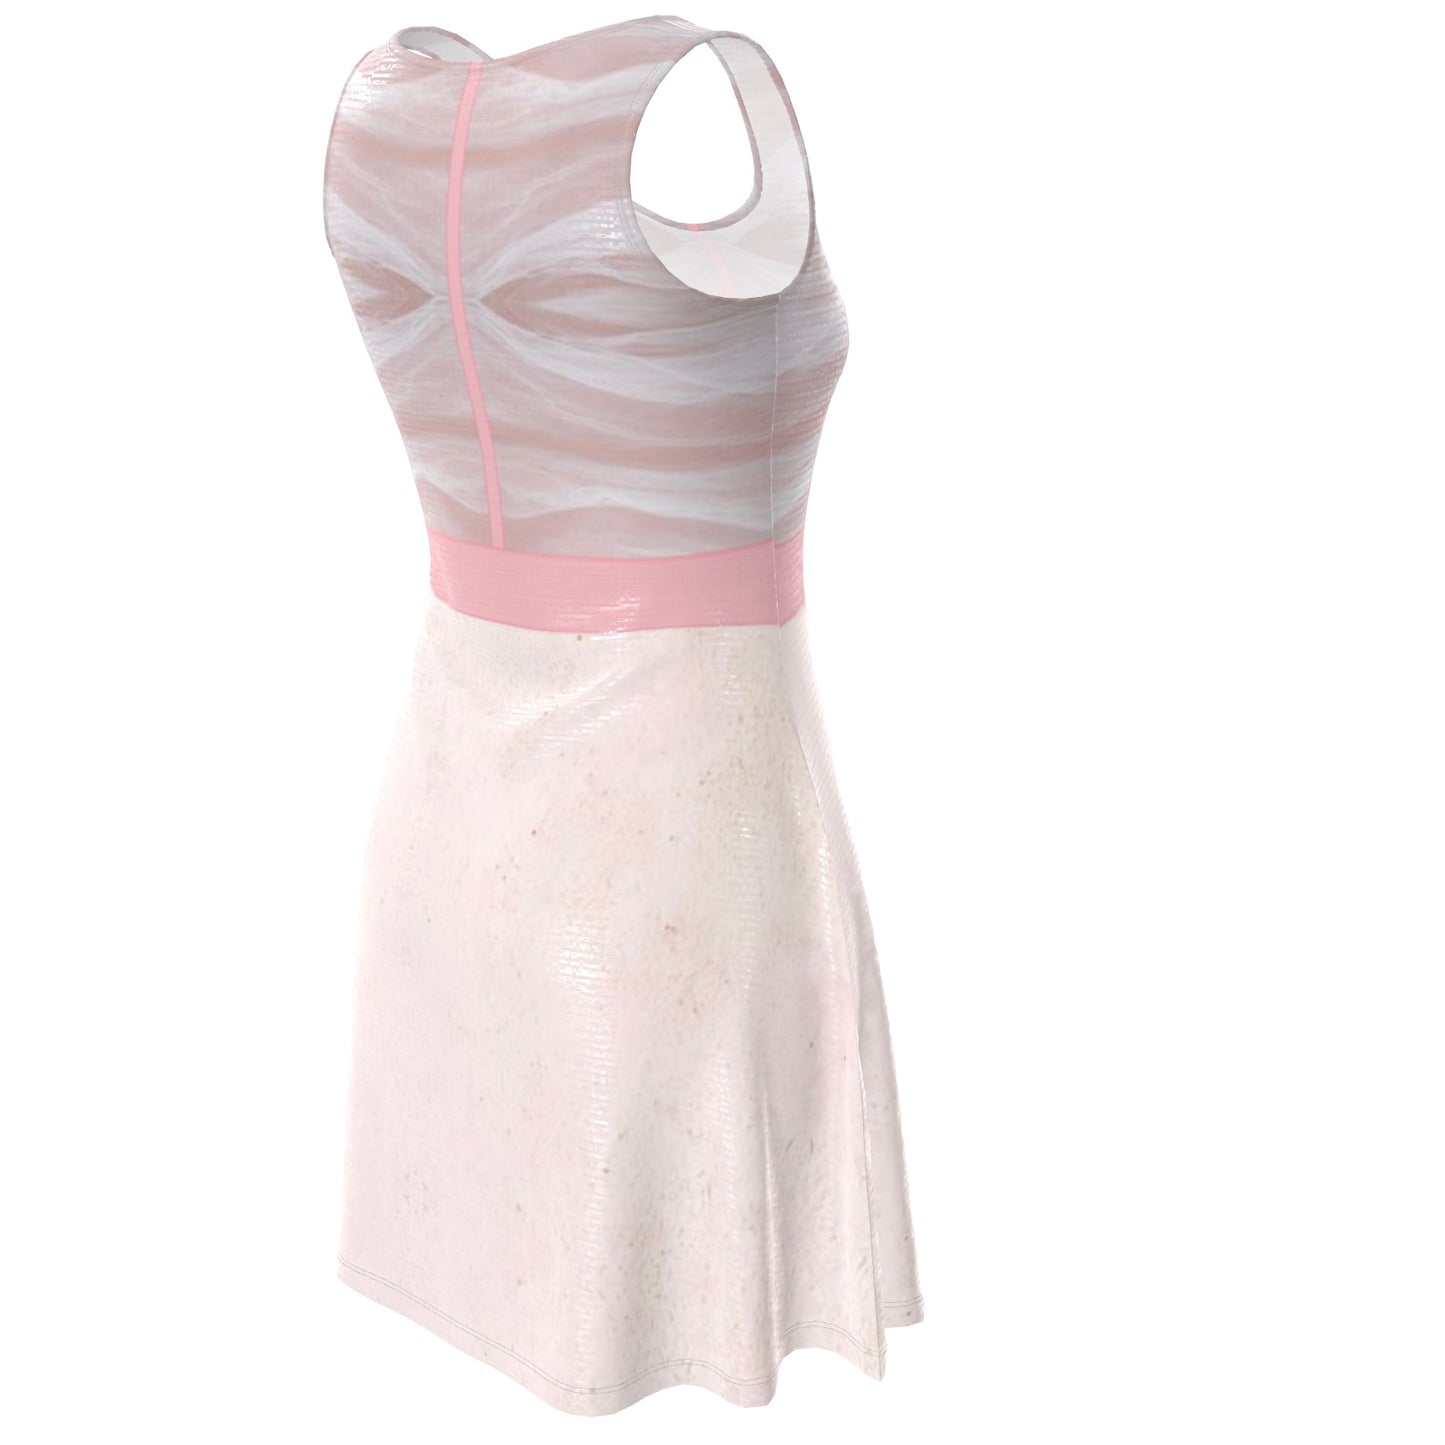 Marla Singer Pink Velour KiSS Skater Dress - Fight Club Inspired - Cosplay Handmade